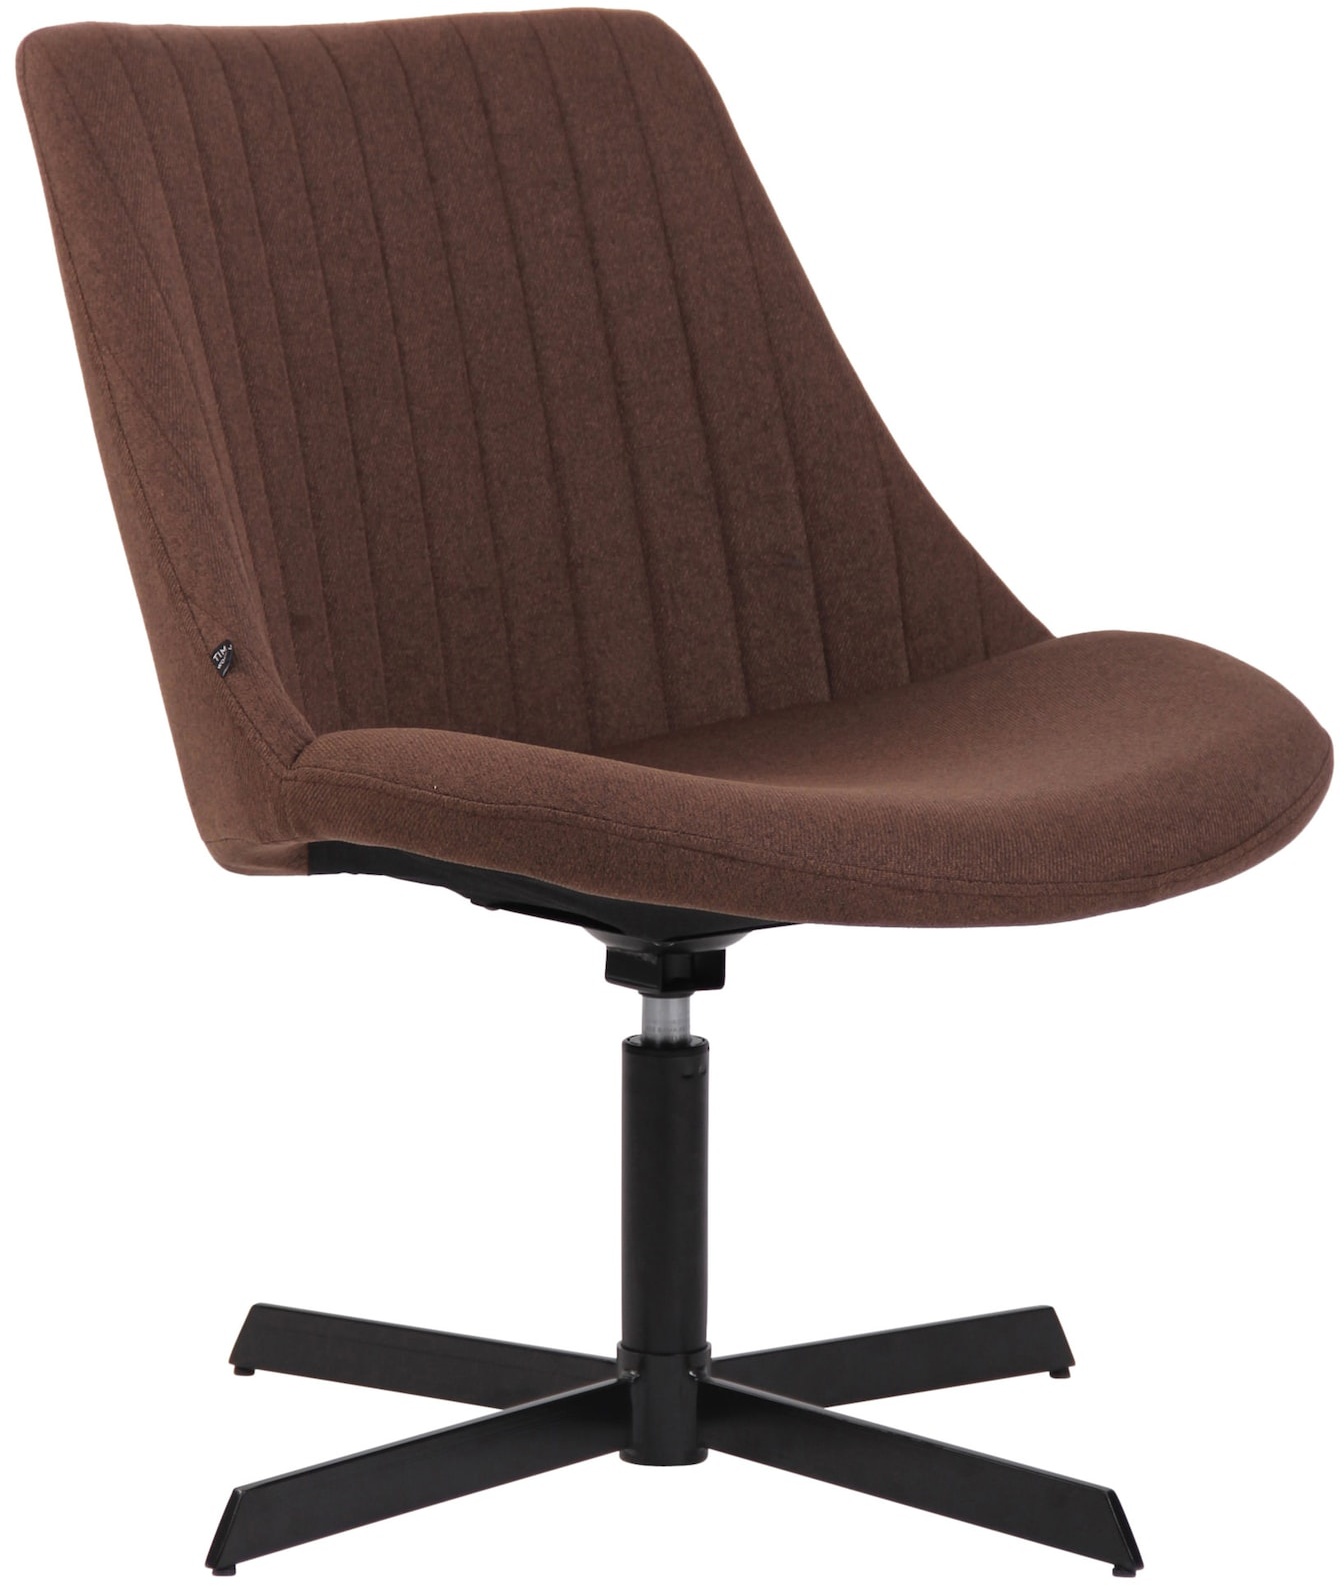 CLP Lounger Granby I 360 Grad Drehbarer Relax Sessel Mit Stoffbezug I Ergonomisches Design Mit Bodenschonern I Polsterstuhl Mit Rückenlehne